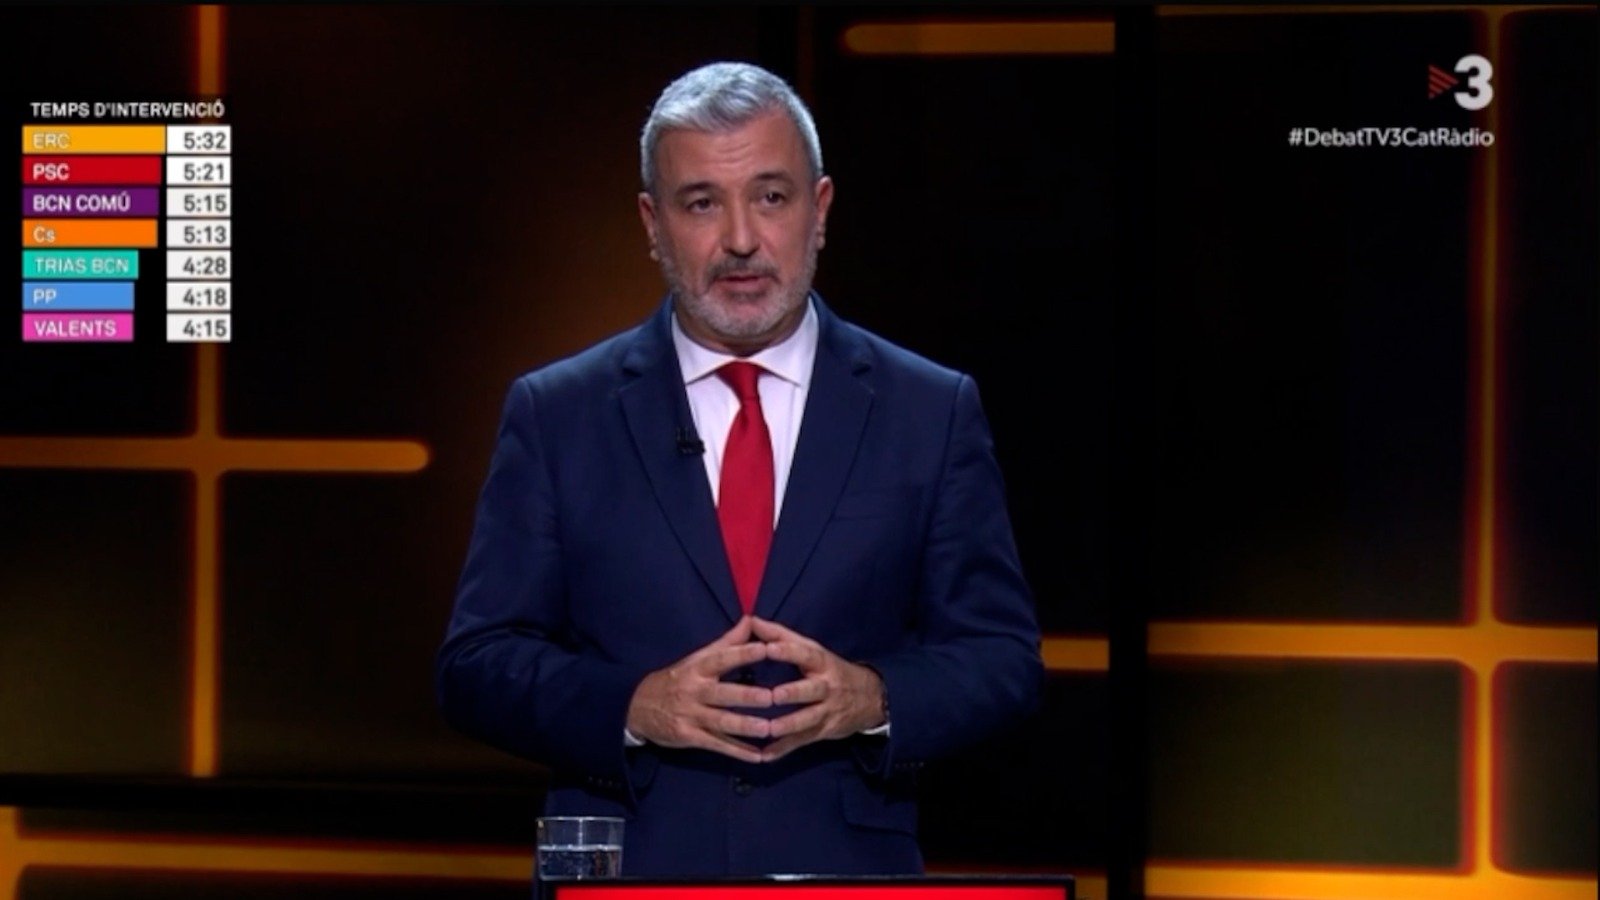 Jaume Collboni, PSC debat TV3